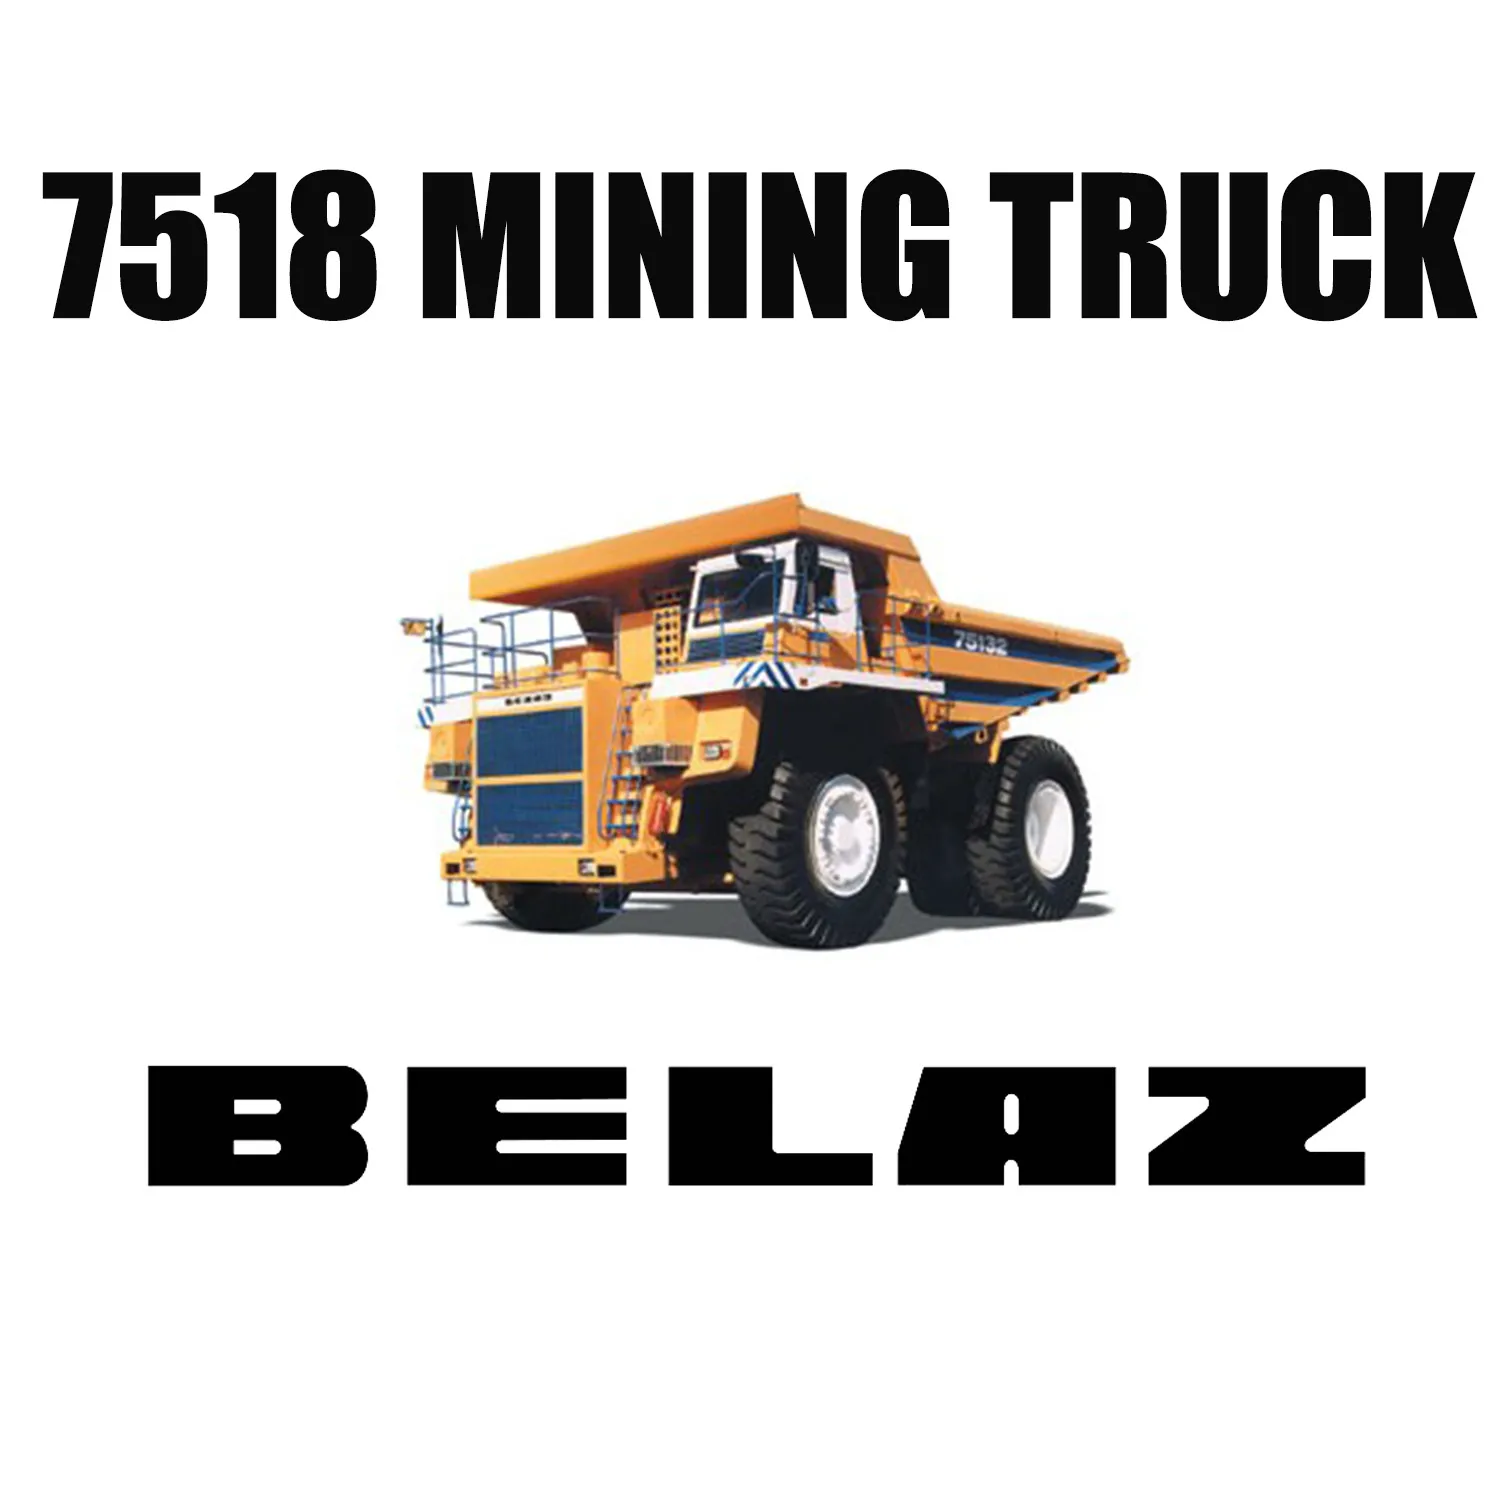 Giant LUAN 37.00R57 Earthmover OTR Tires for Dump Truck BELAZ 7518